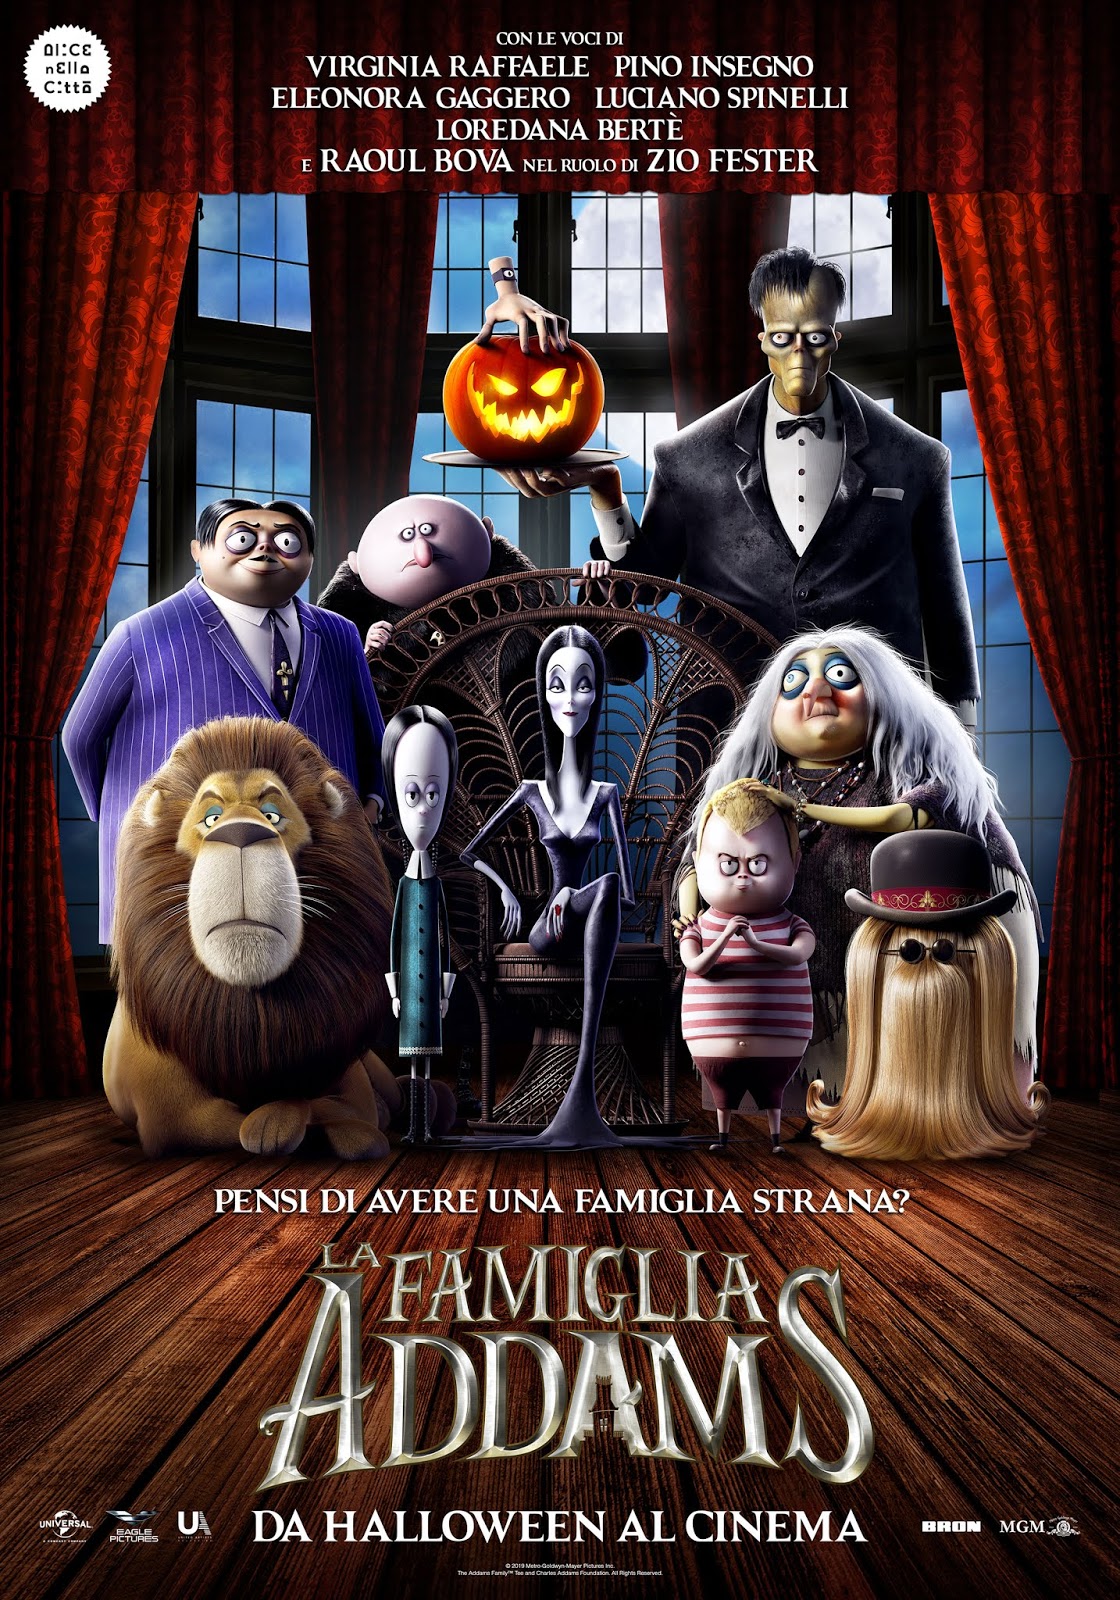 Recensione Film Danimazione La Famiglia Addams 2019